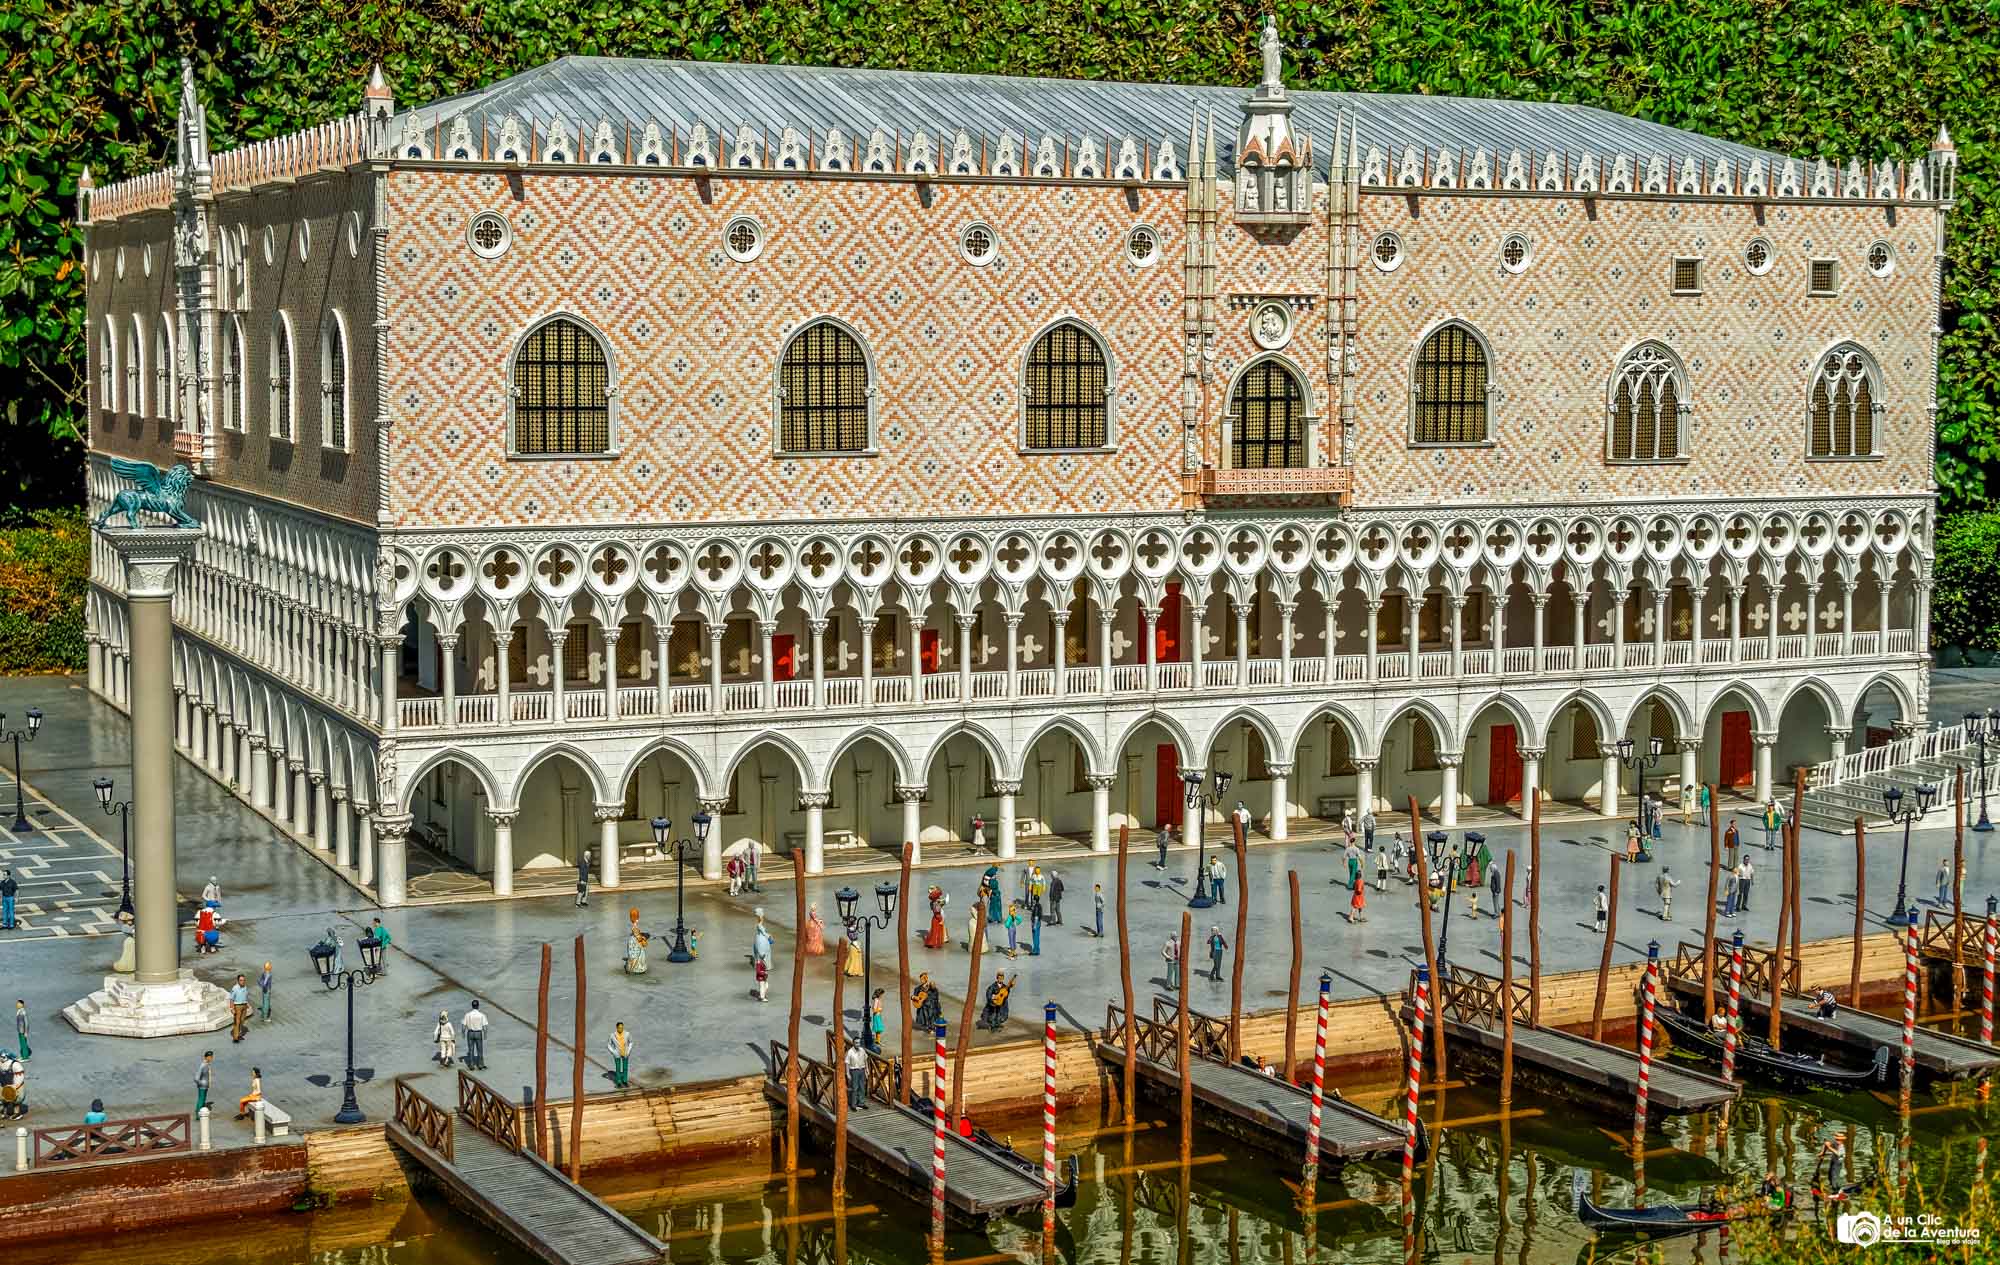 Maqueta del Palacio Ducal de Venecia en Mini Europe, que ver en Bruselas